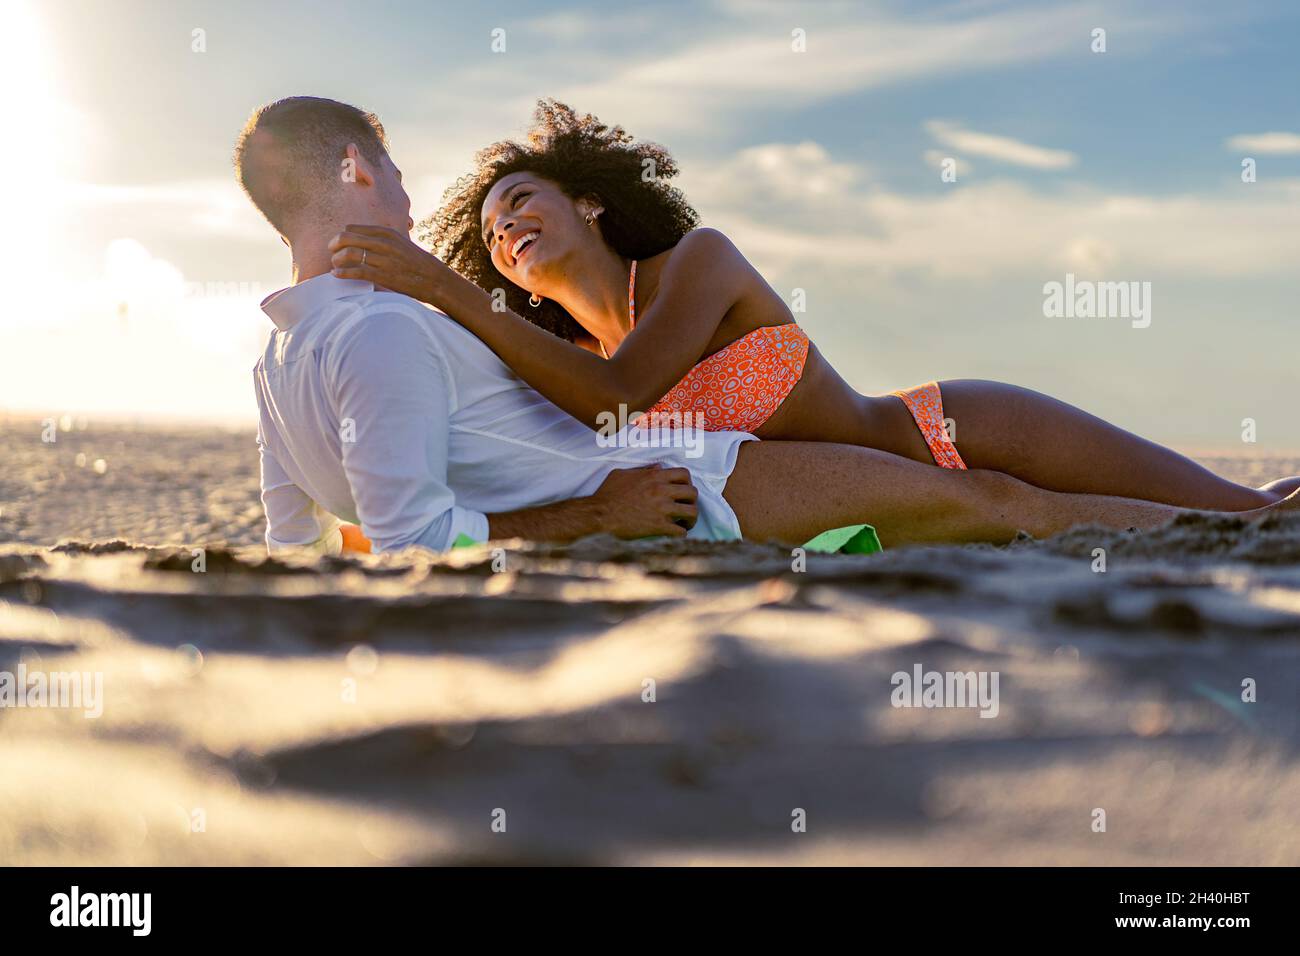 Ein junges multirassisches romantisches Paar streichelt sich zärtlich am Strand bei Sonnenuntergang - Romantik multirassisches Paar am Strand - Liebe und tra Stockfoto